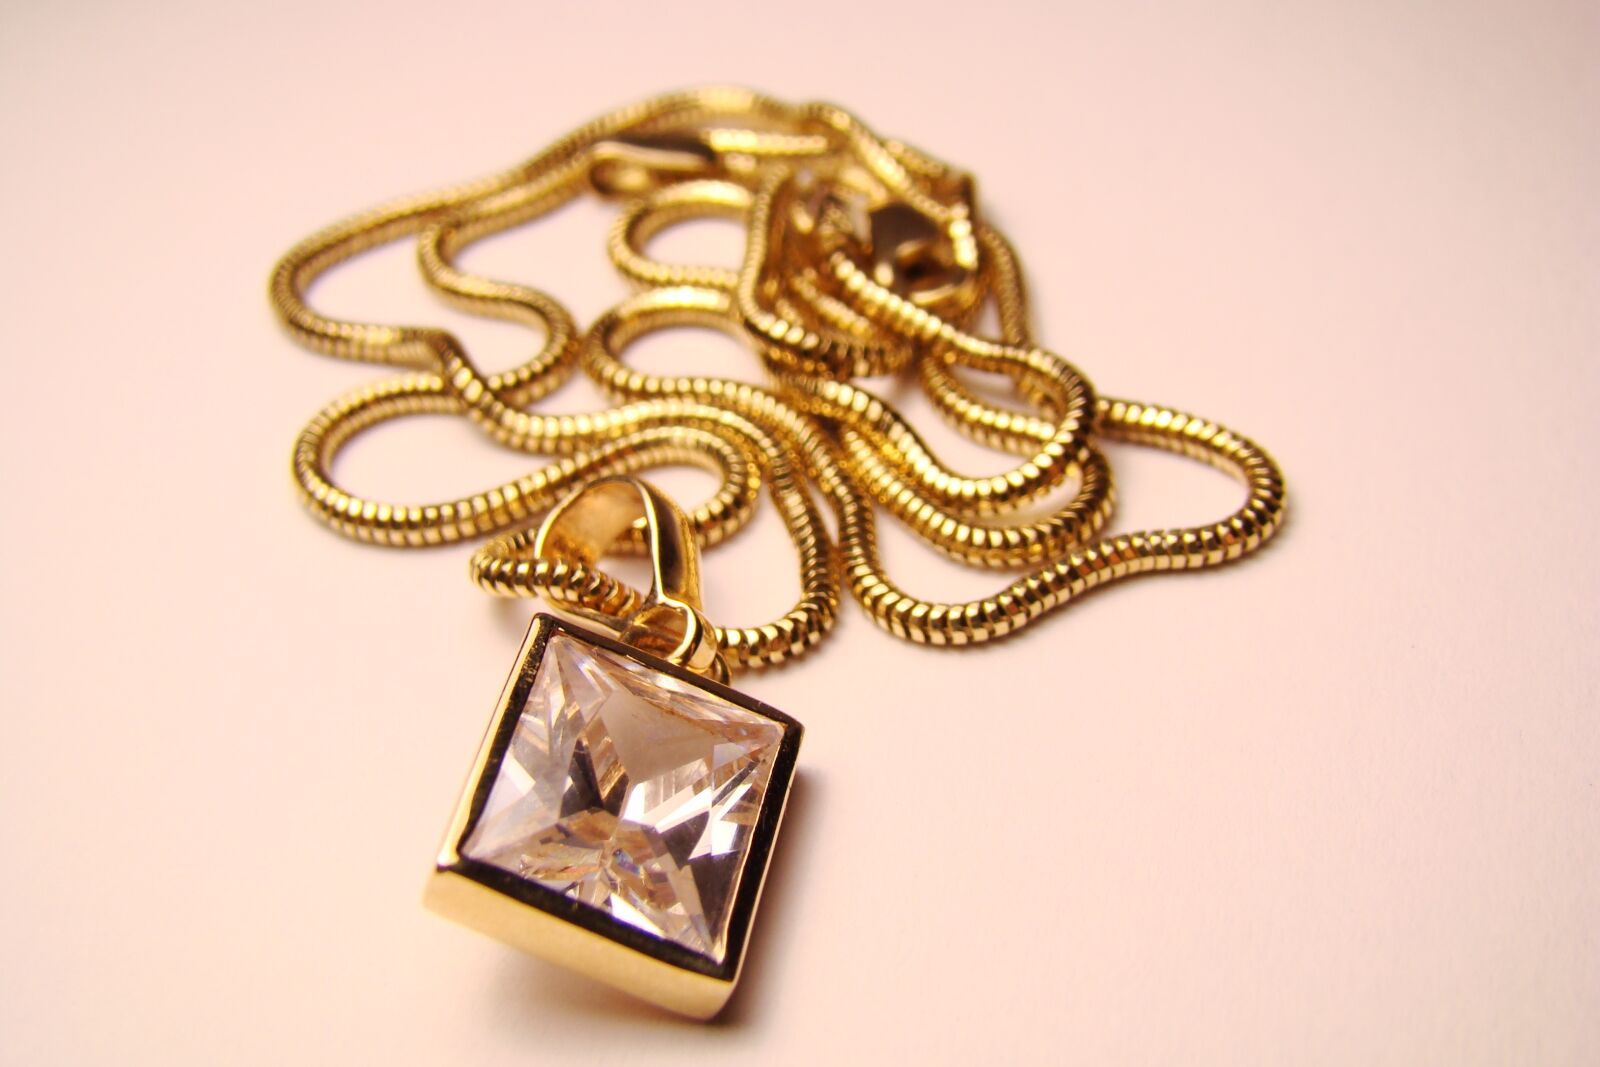 Sony DSC-H7 sample photo. Necklace, gold, beauty photography